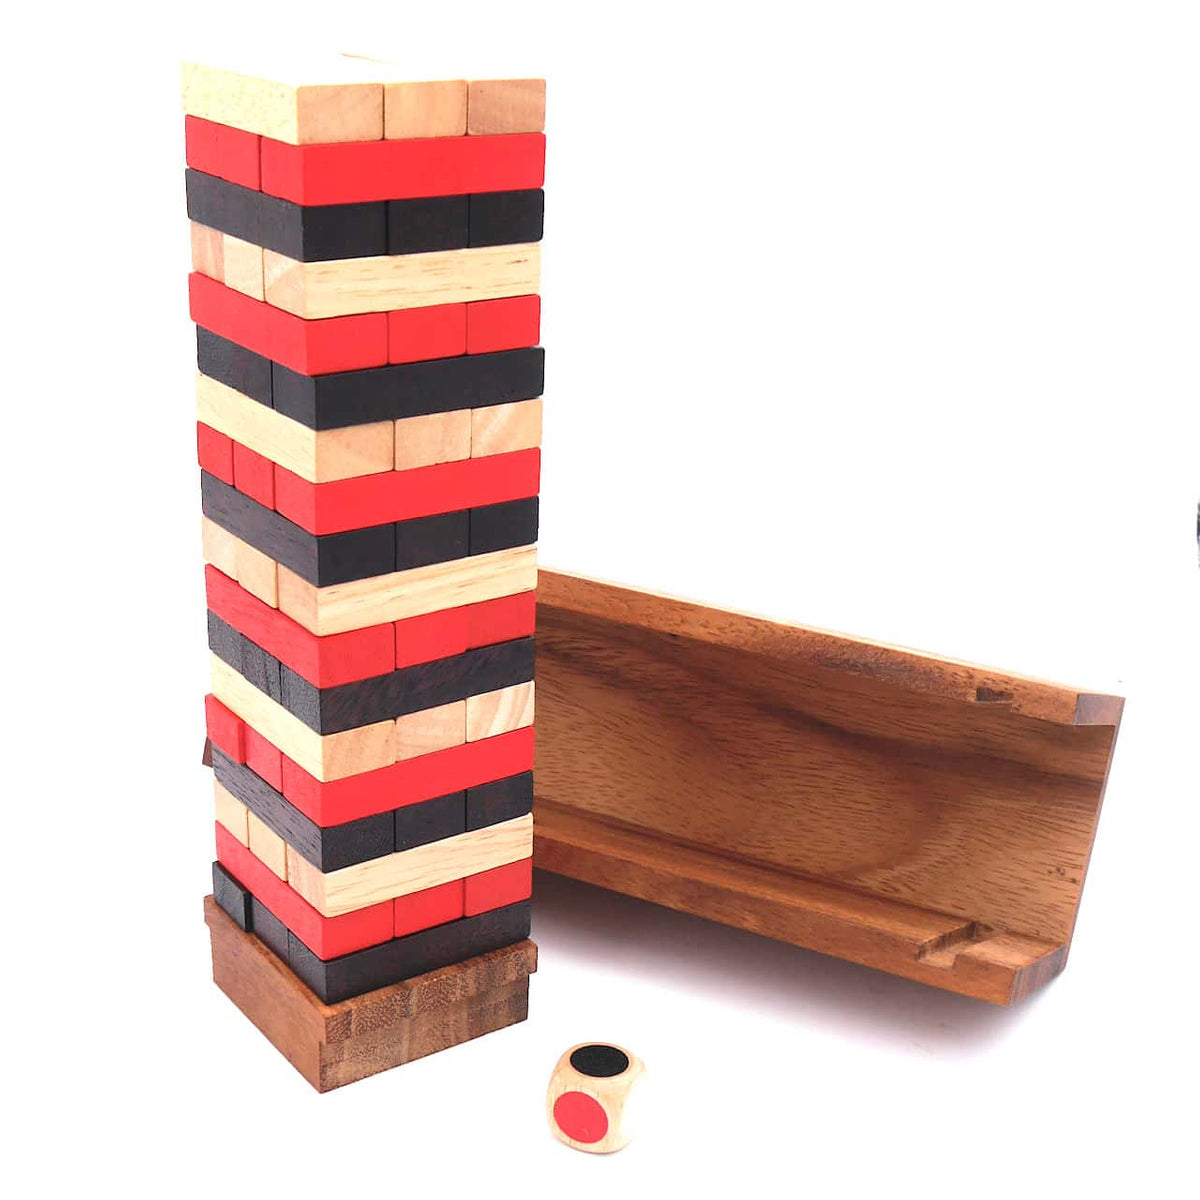 Ein hölzerner Wackelturm, ein Stapelspiel, bei dem Holzblöcke zu einem Turm gestapelt sind.